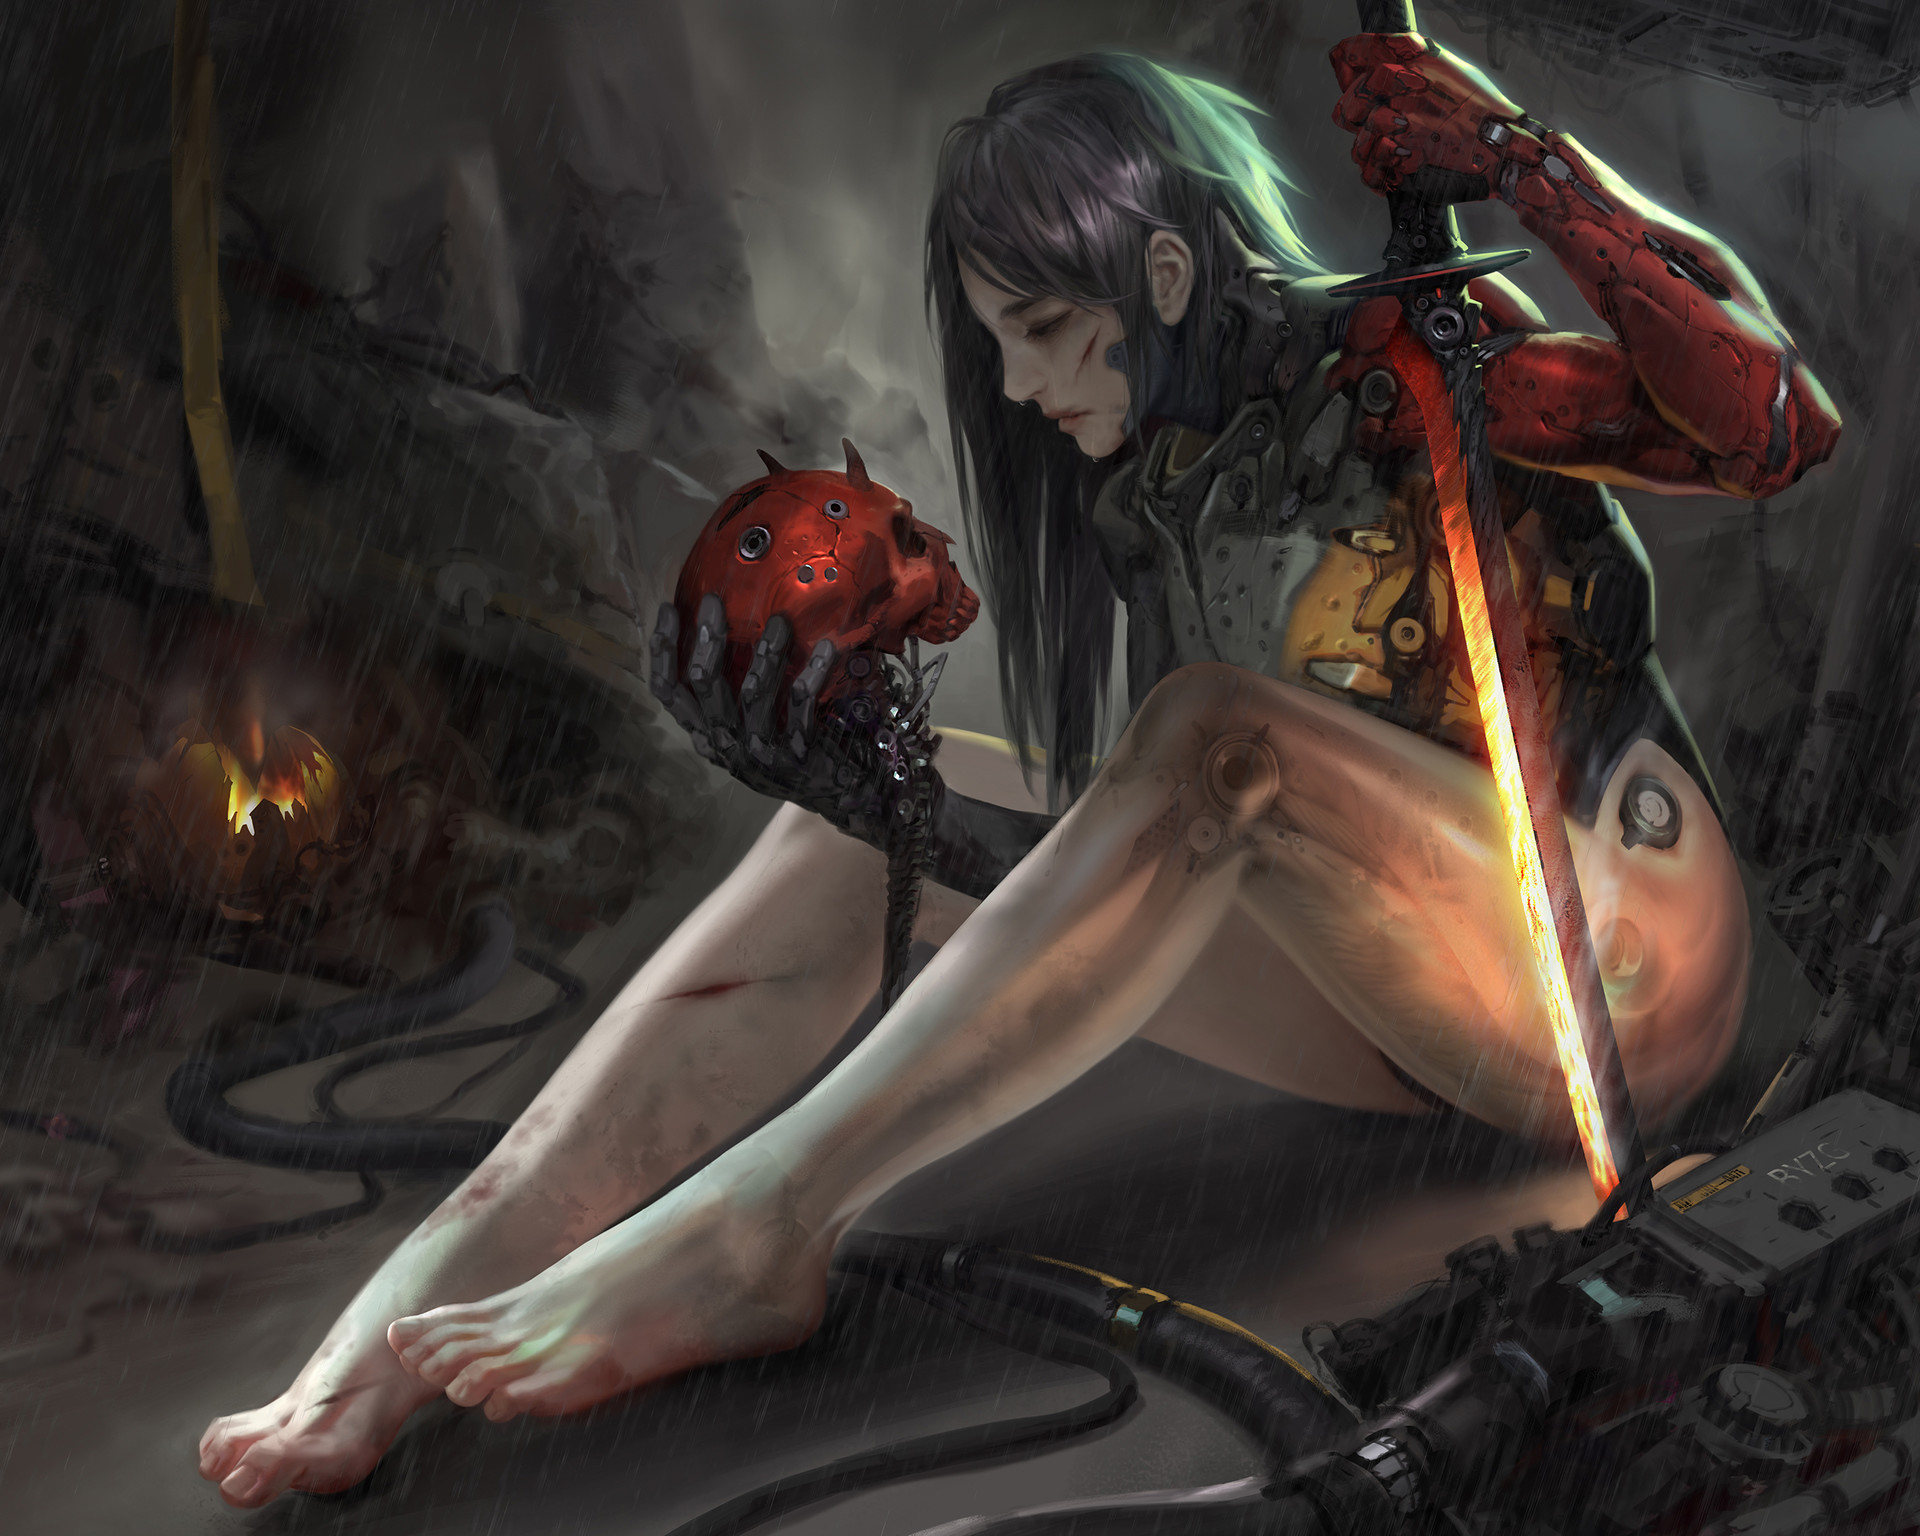 General 1920x1536 women artwork digital art 2D cyborg sword skull cyberpunk rain barefoot concept art